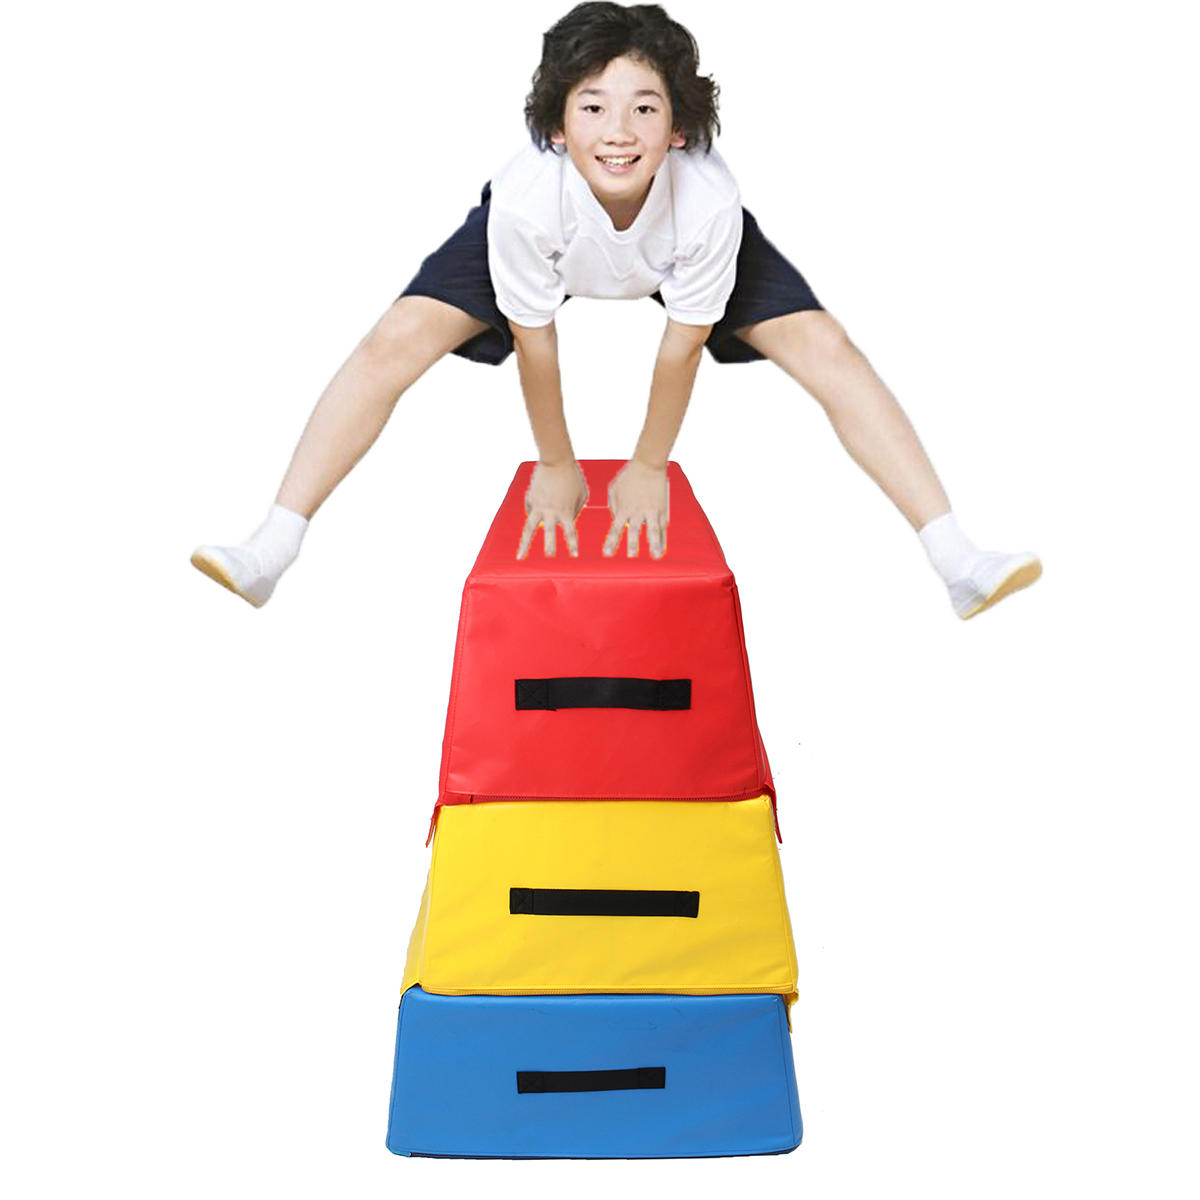 35.4x23.6x35.4 inch Foam PVC Soft Plyo Jump Box Body Oefening Gereedschap Gezondheid Fitness Springen Doos